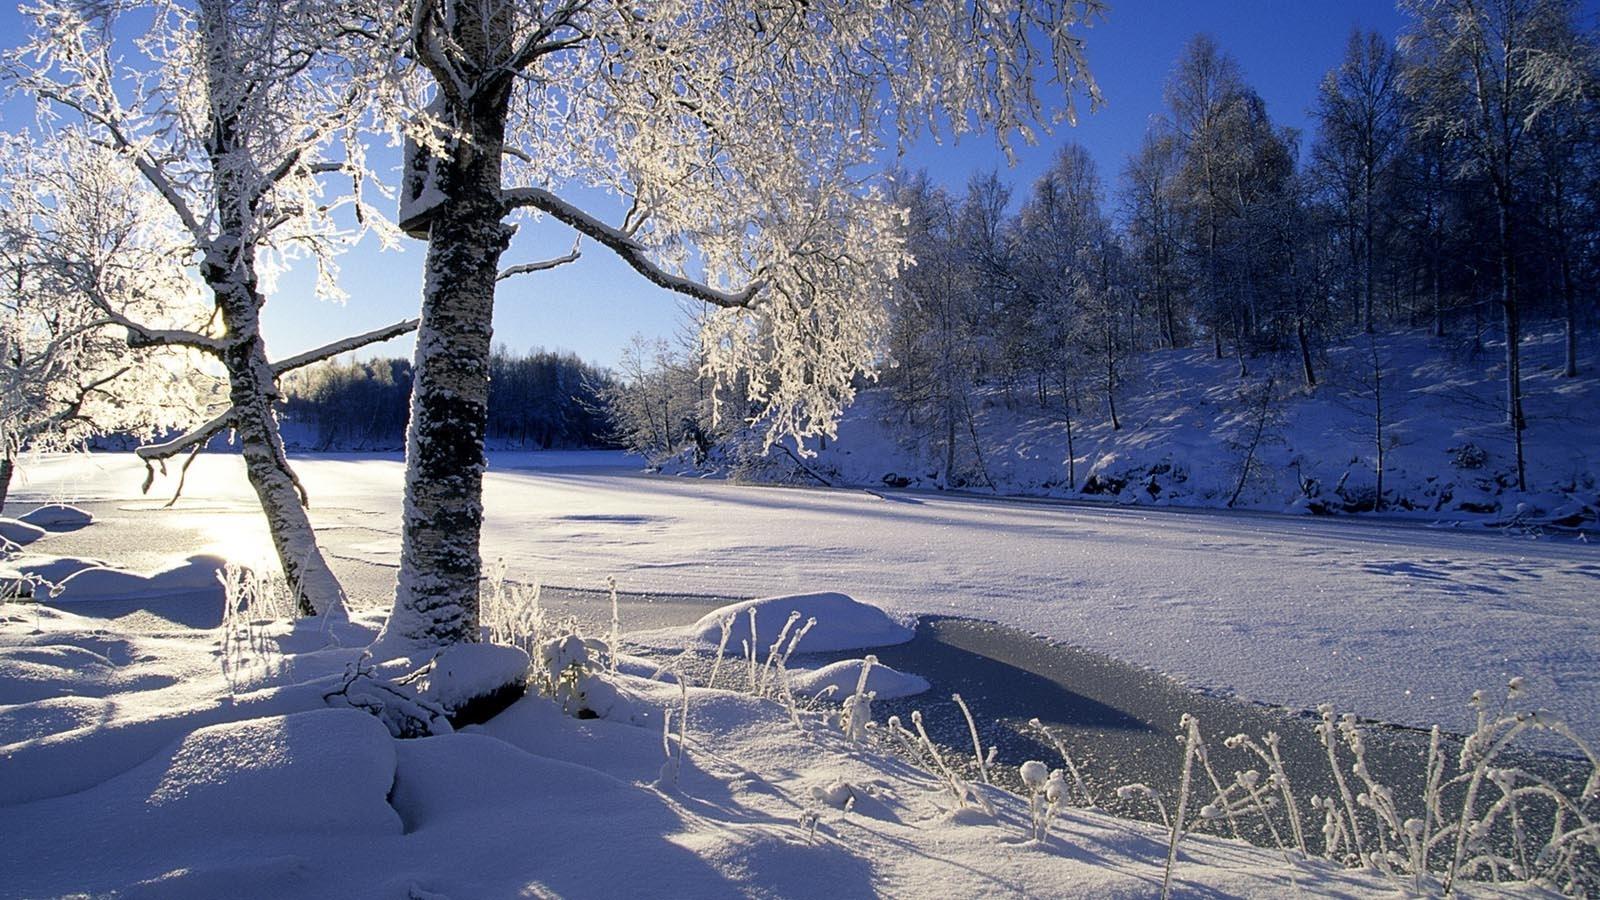 国外的冬季夜晚唯美雪景高清桌面壁纸大图_配图网